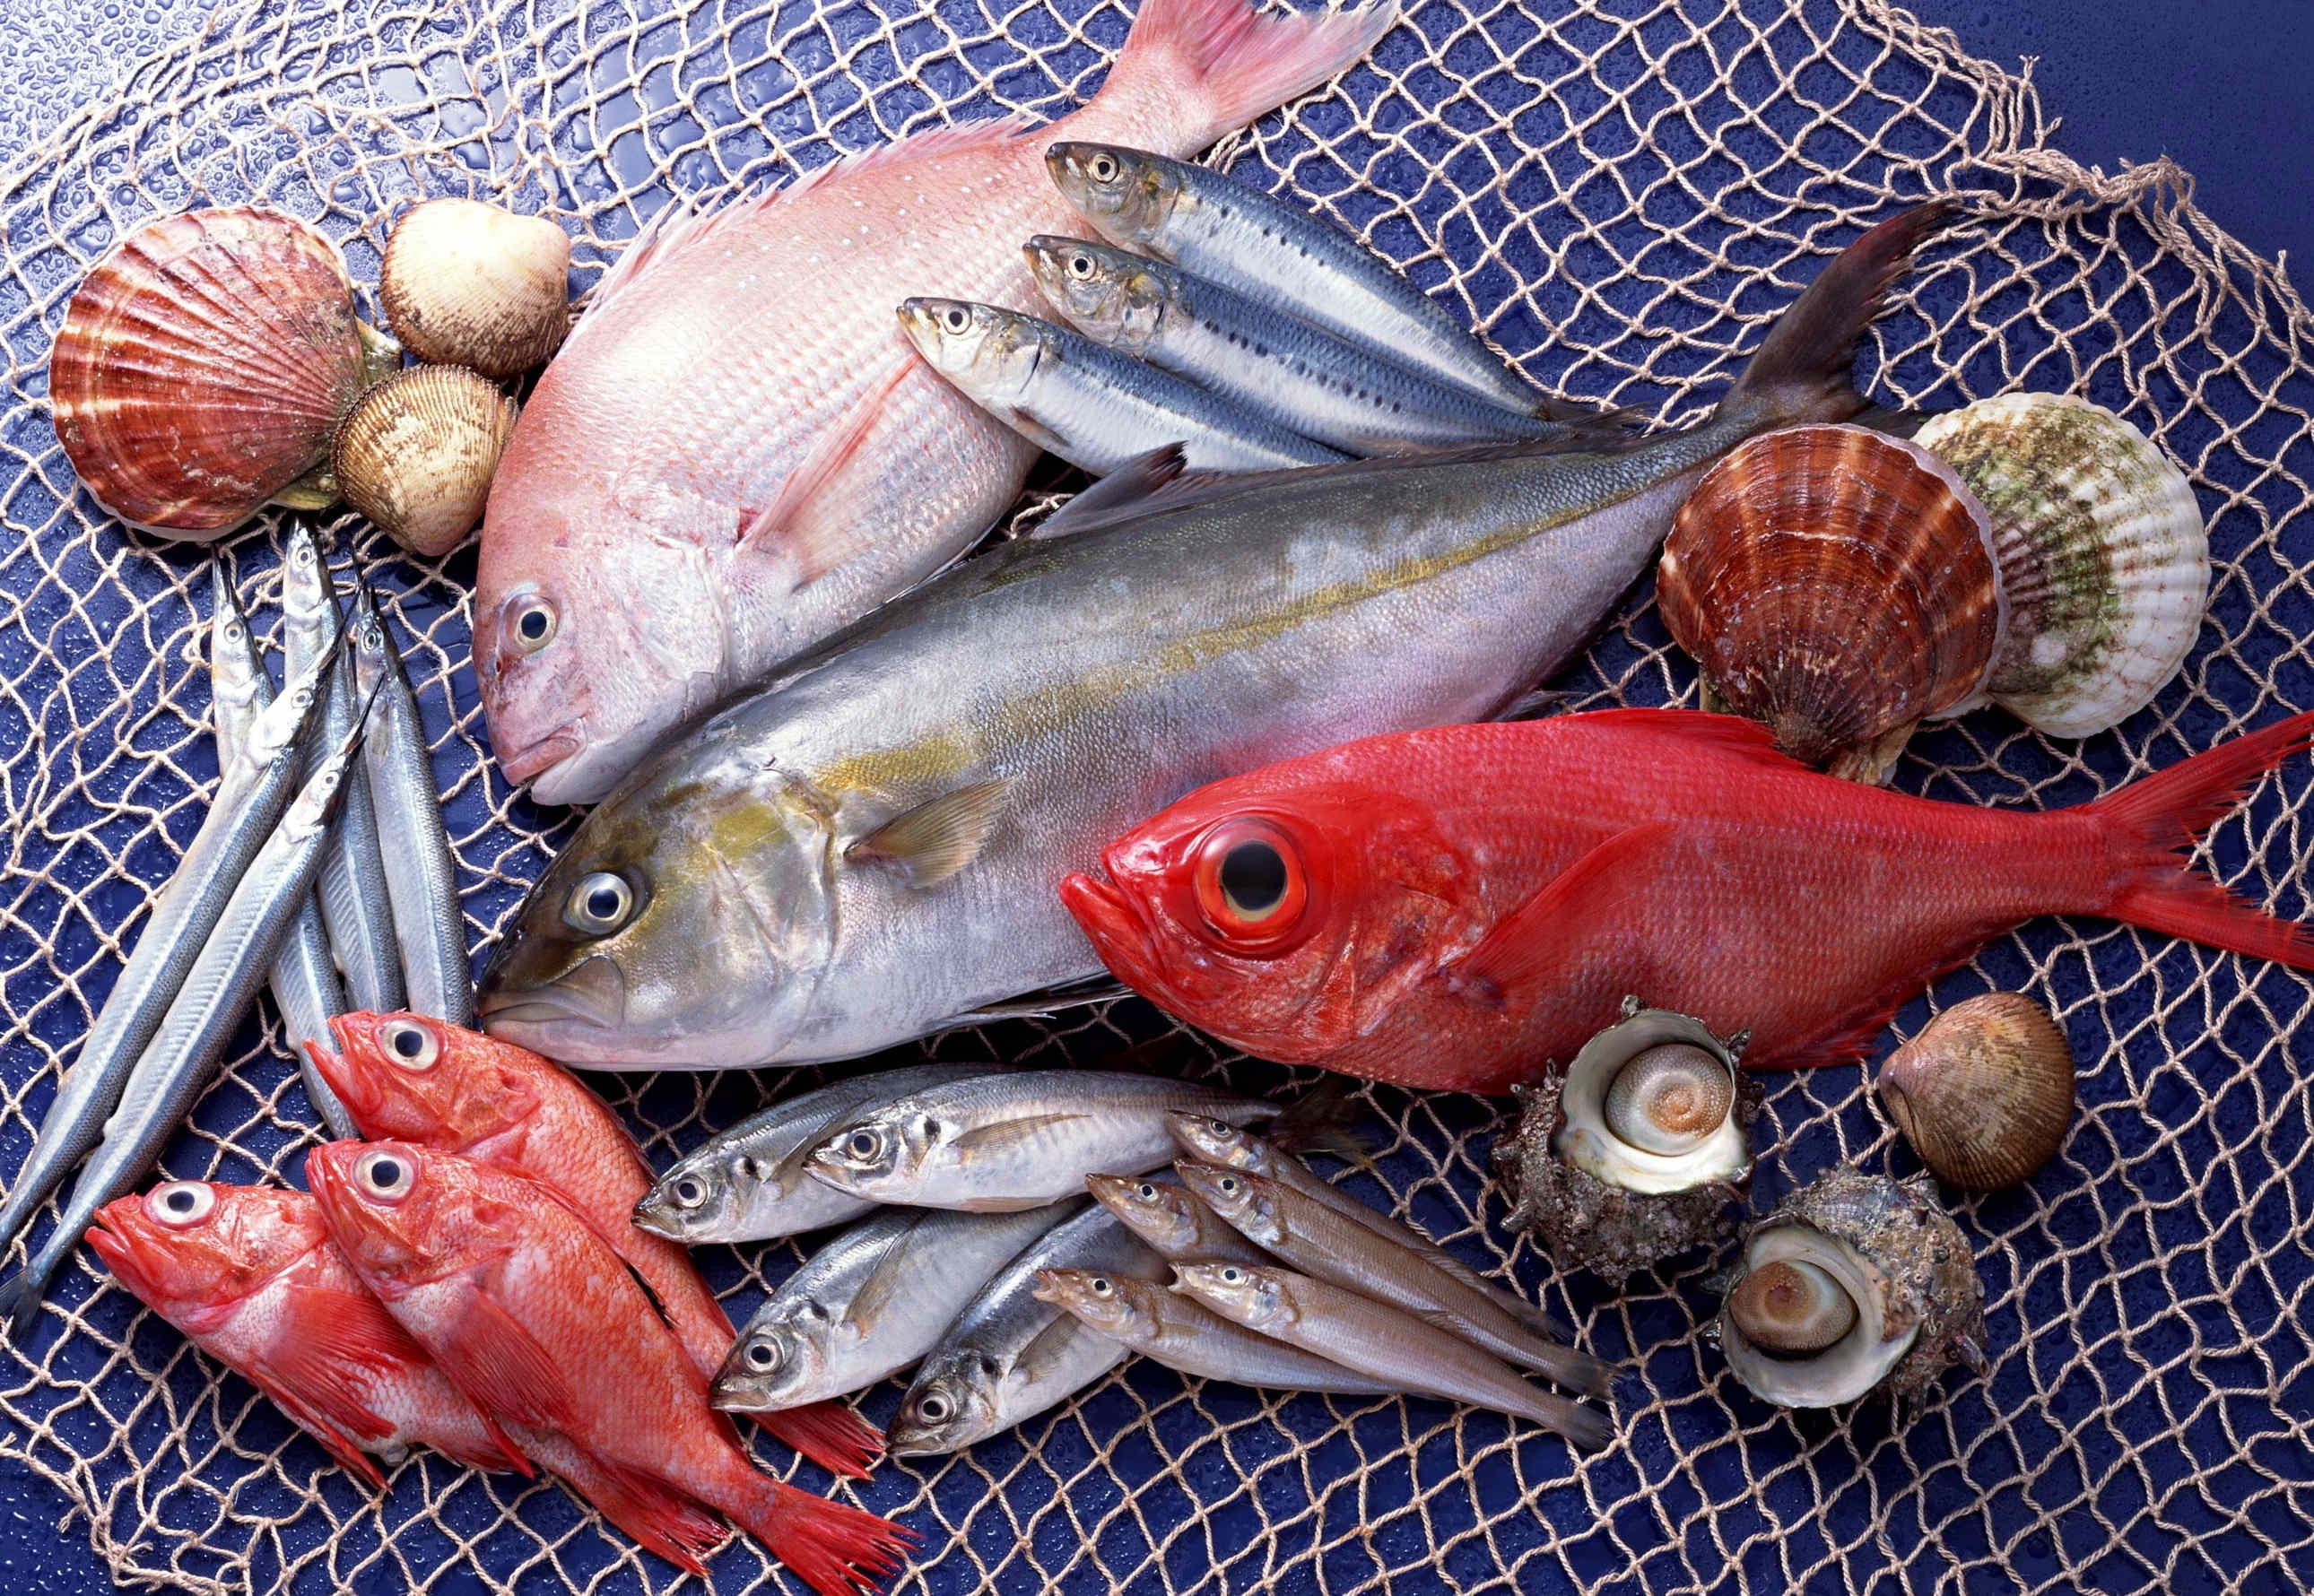 ФГУП «Национальные рыбные ресурсы» создаст в РФ сеть рыбных магазинов «по доступным ценам»